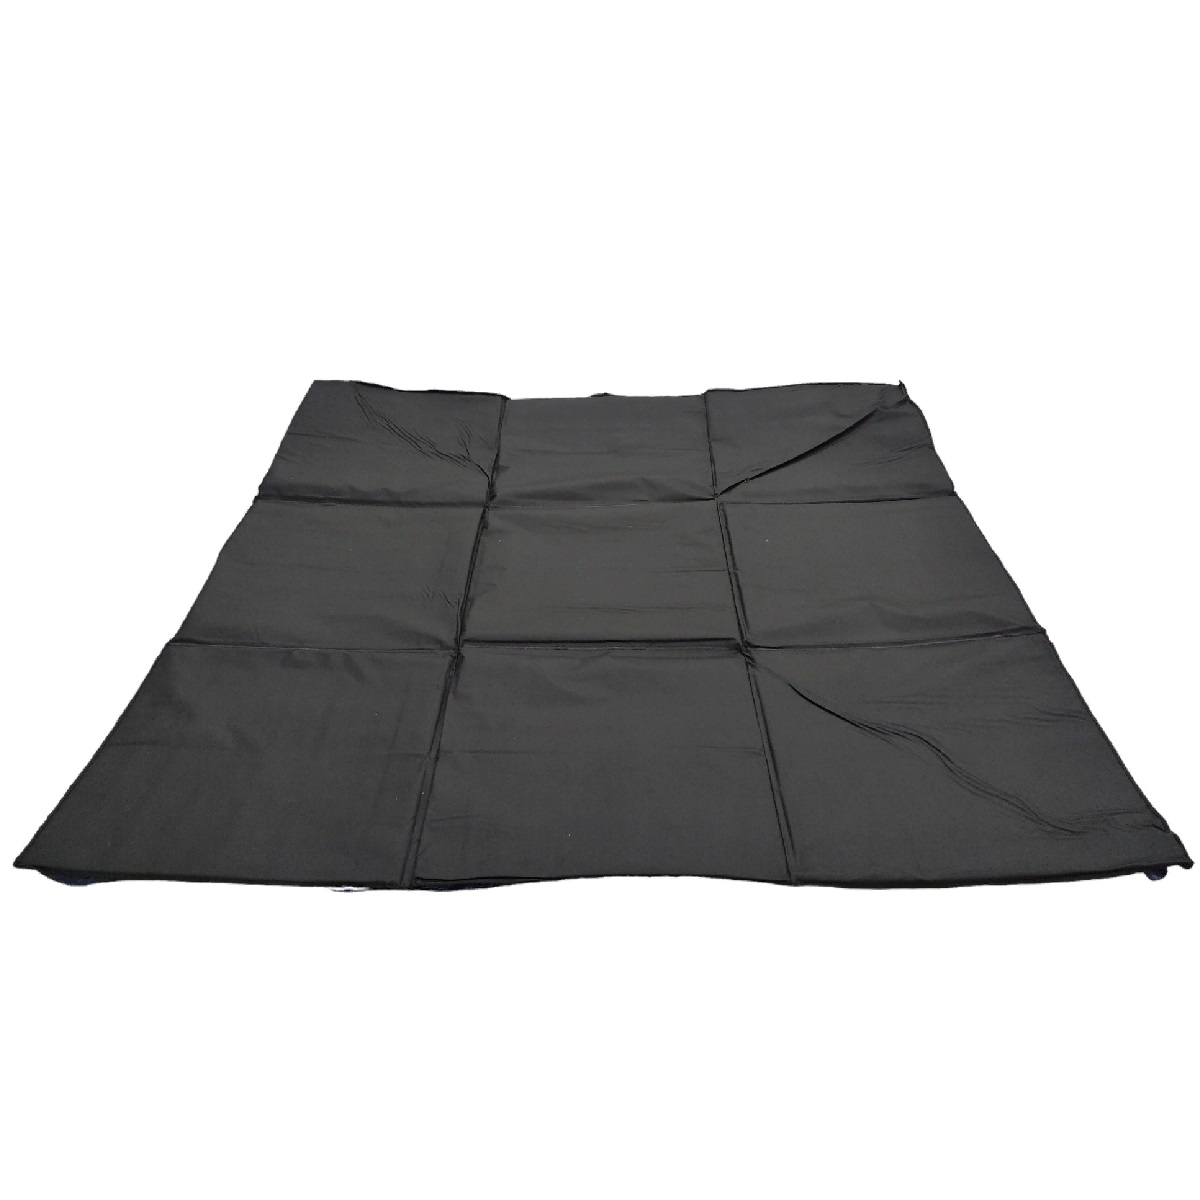 Пол для зимней палатки Следопыт Premium (180х180х1 см, трехслойный, с липучками)